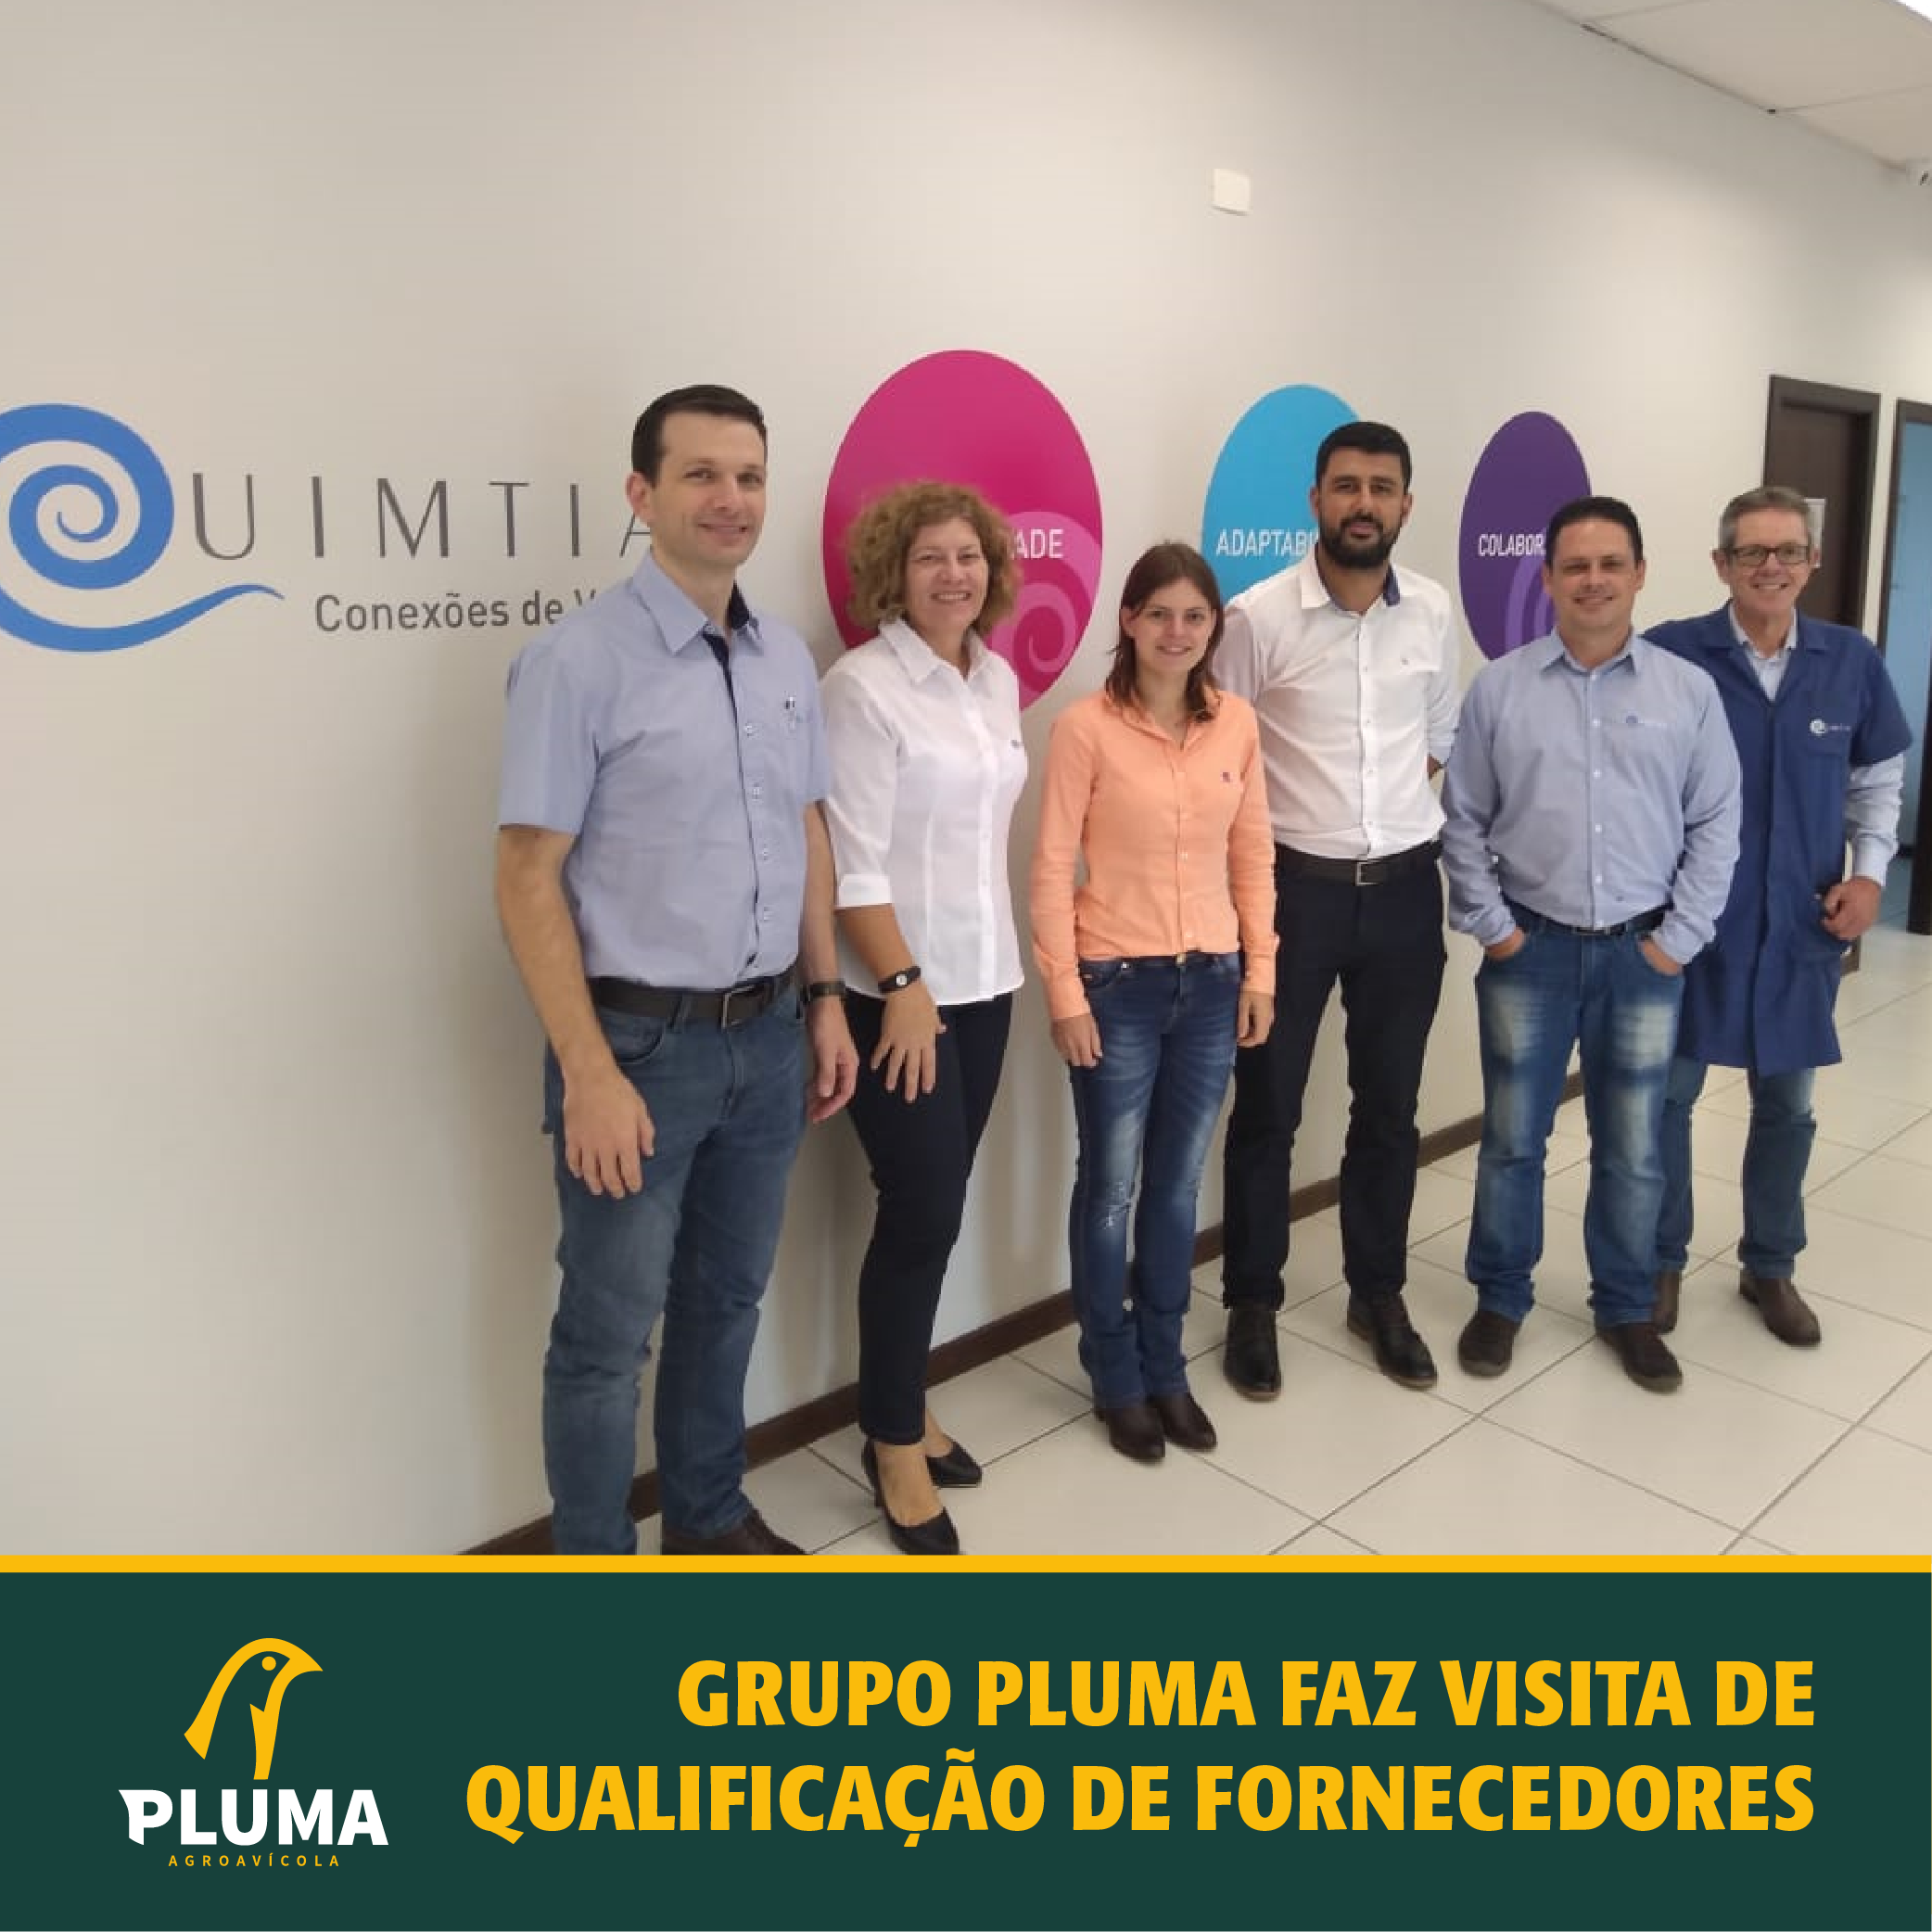 Grupo Pluma faz visita de qualificação de fornecedores 